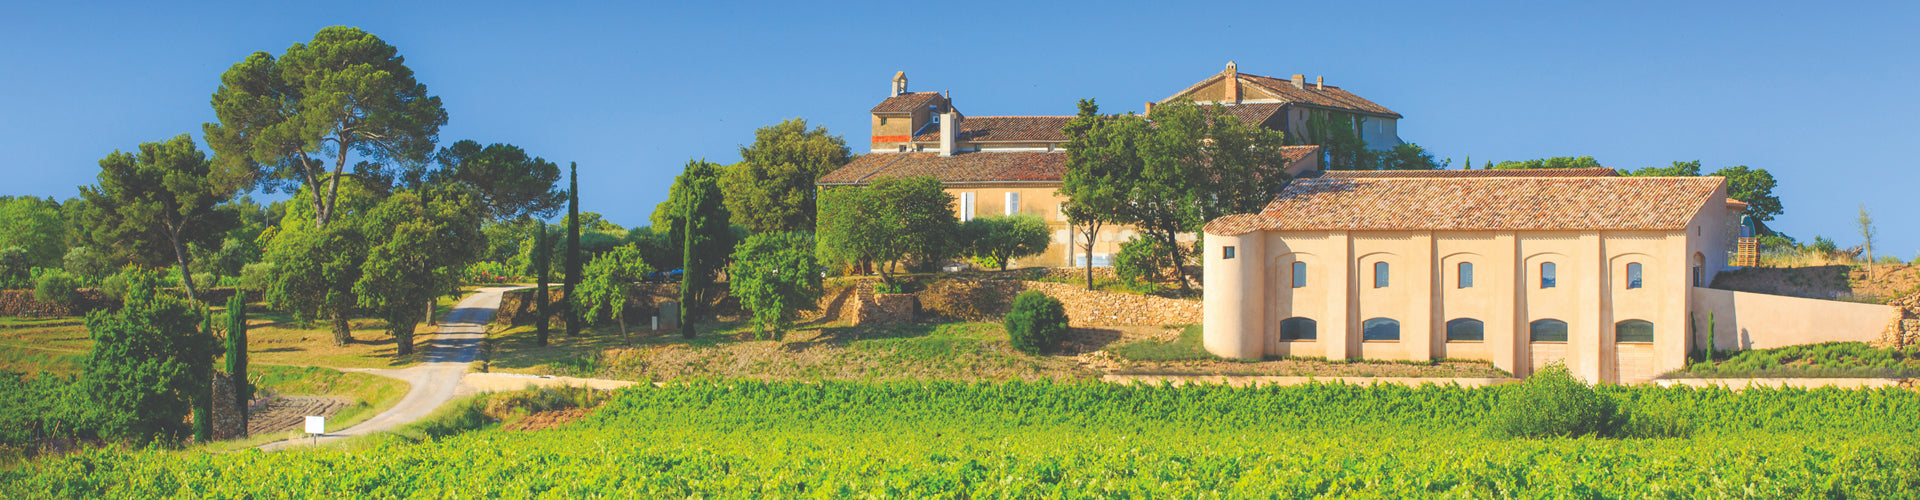 Château La Tour de l'Evêque Winery in Provence